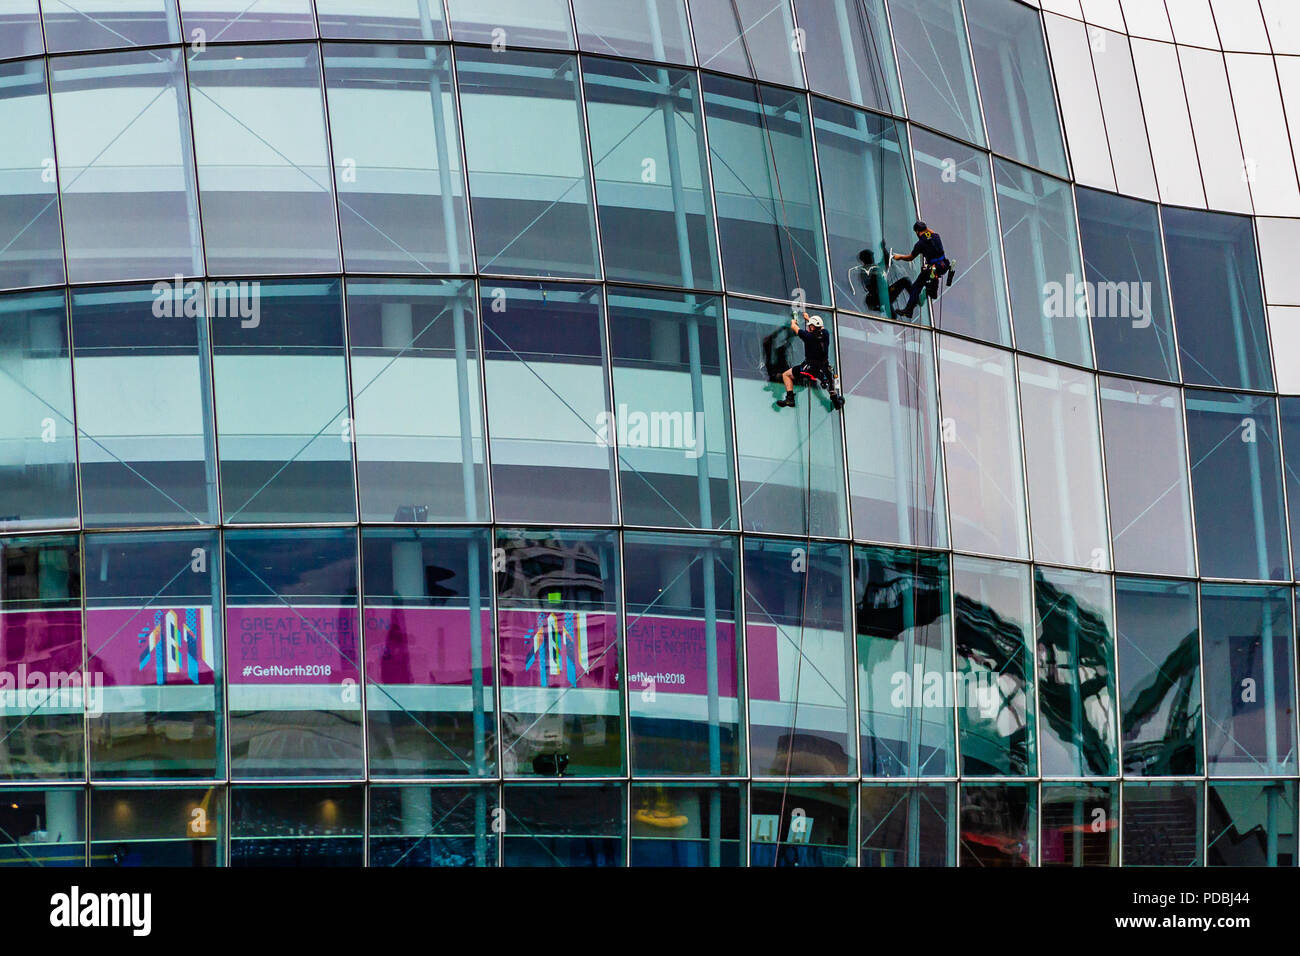 Zwei Fensterputzer arbeiten auf dem Sage, ein Wahrzeichen Konzerthalle in einem gebogenem Glas und Edelstahl Gebäude, das im Jahr 2004 eröffnete, Gateshead, Großbritannien. Stockfoto